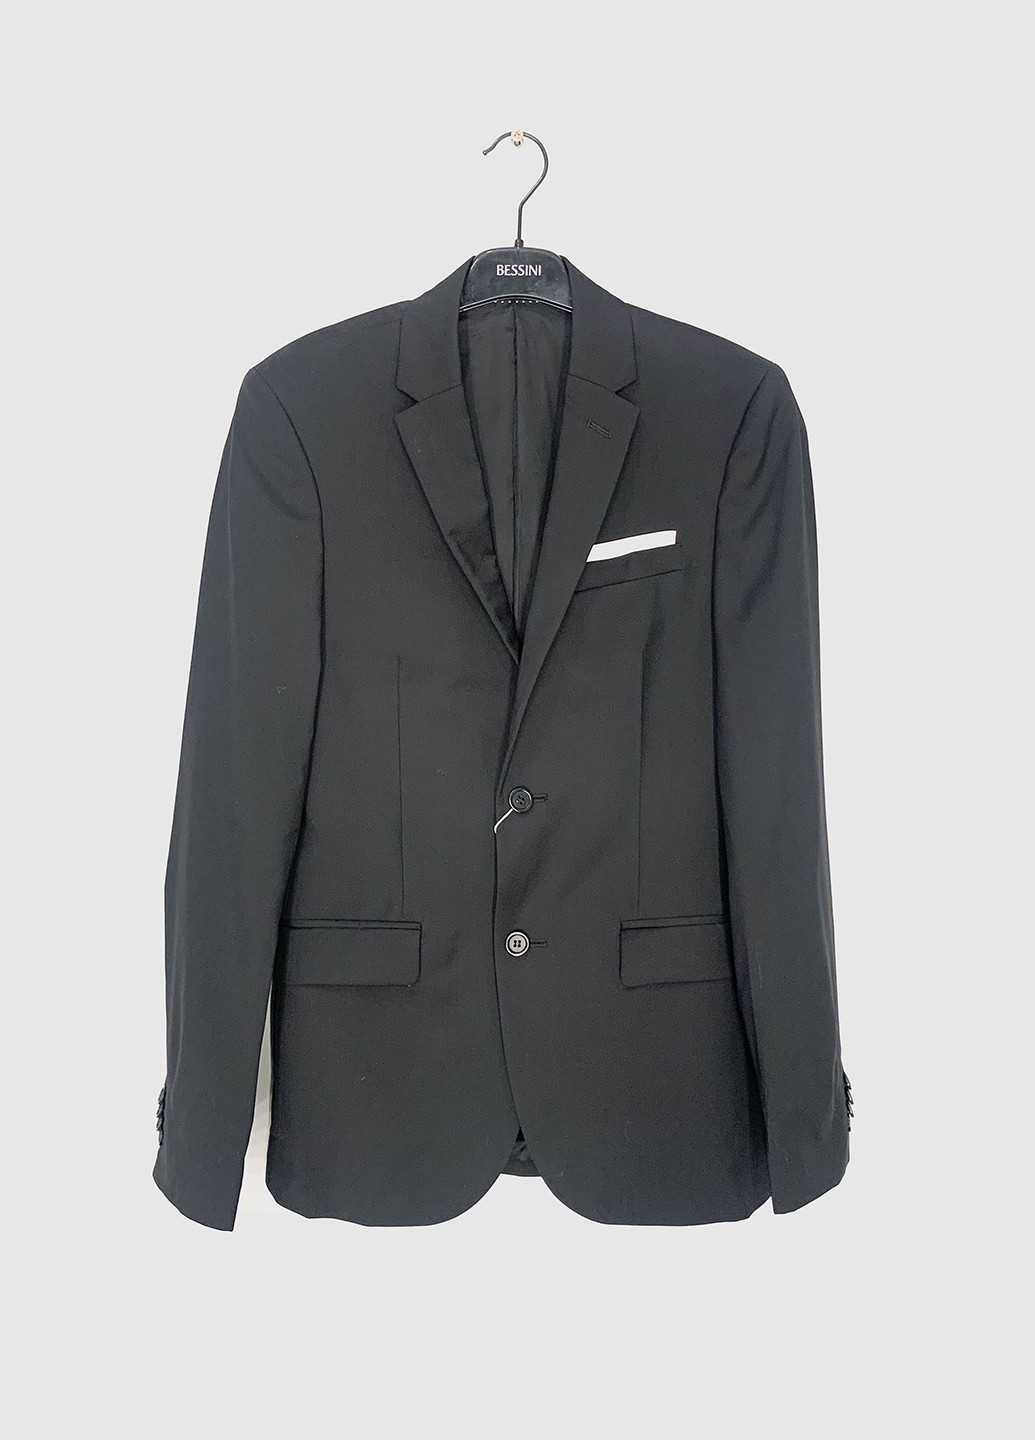 Пиджак H&M однобортный однотонный чёрный деловой шерсть